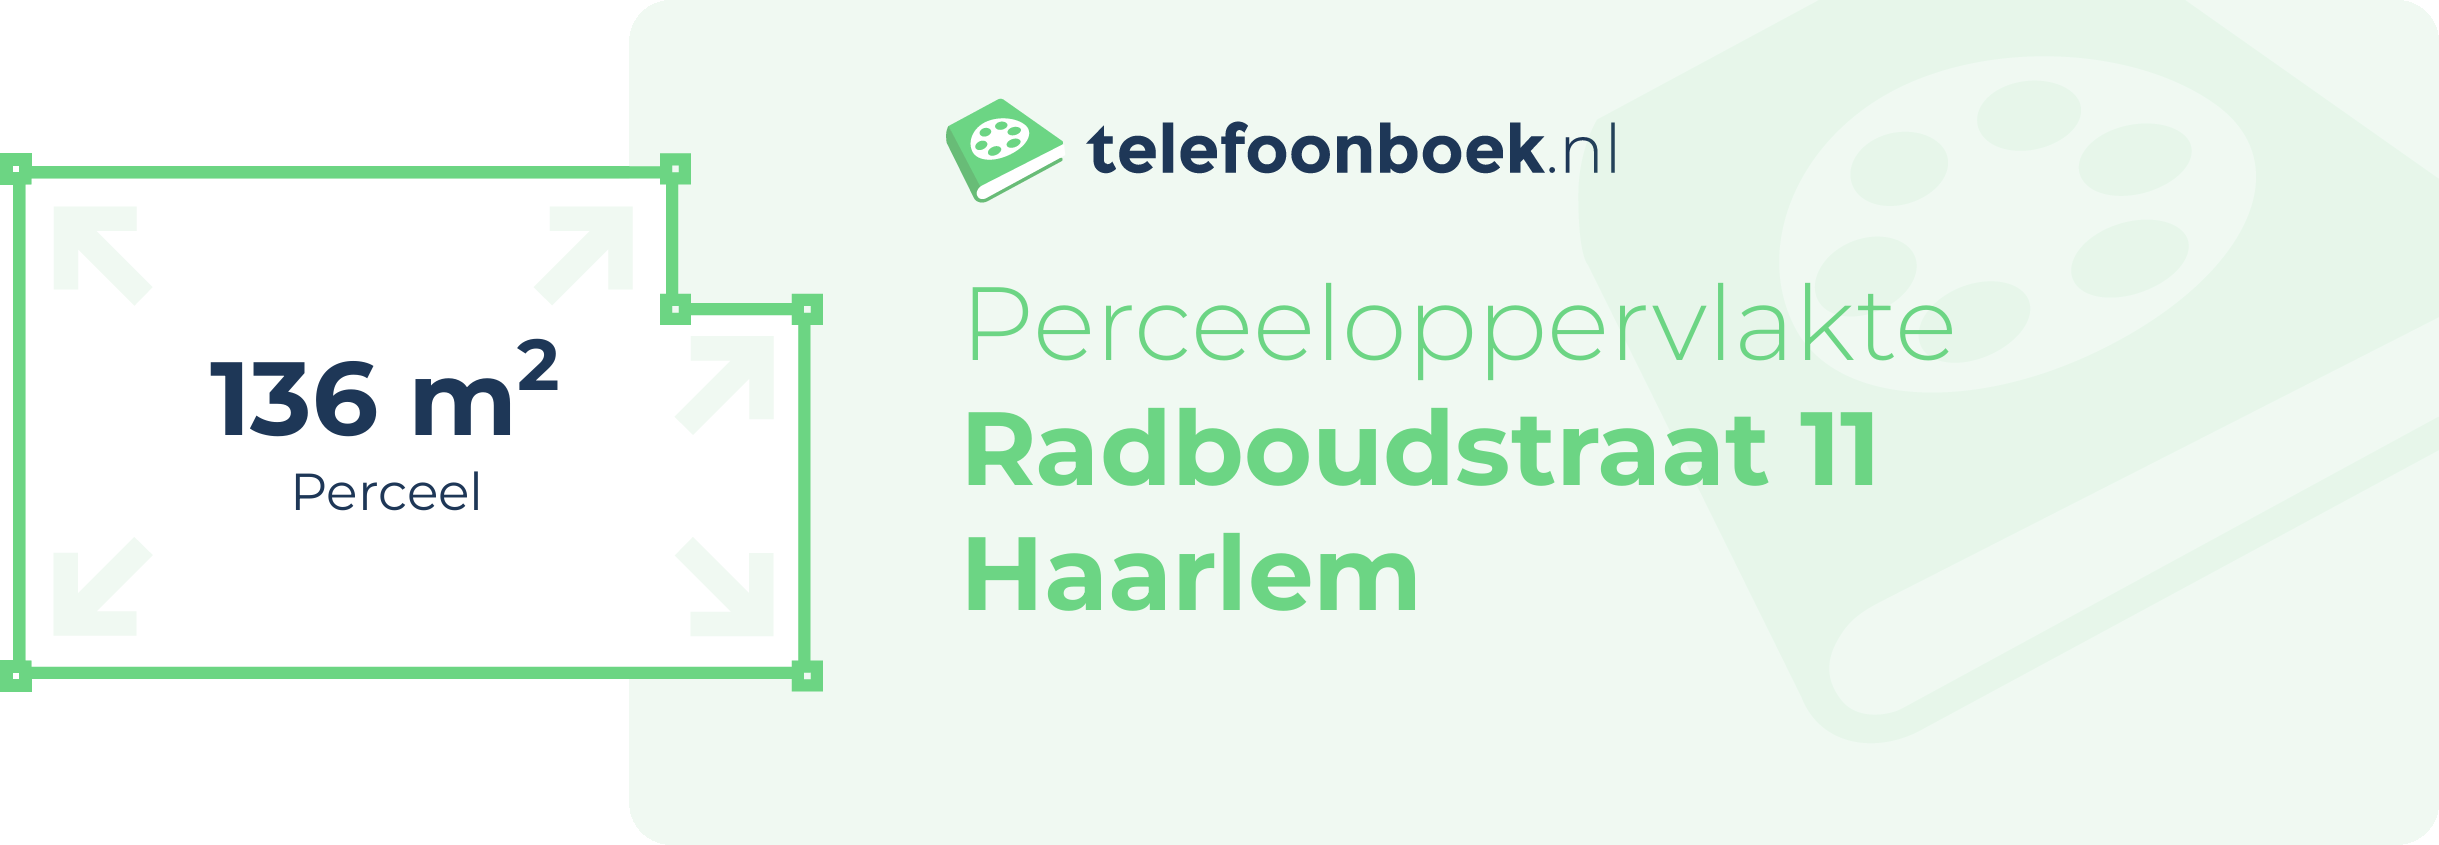 Perceeloppervlakte Radboudstraat 11 Haarlem